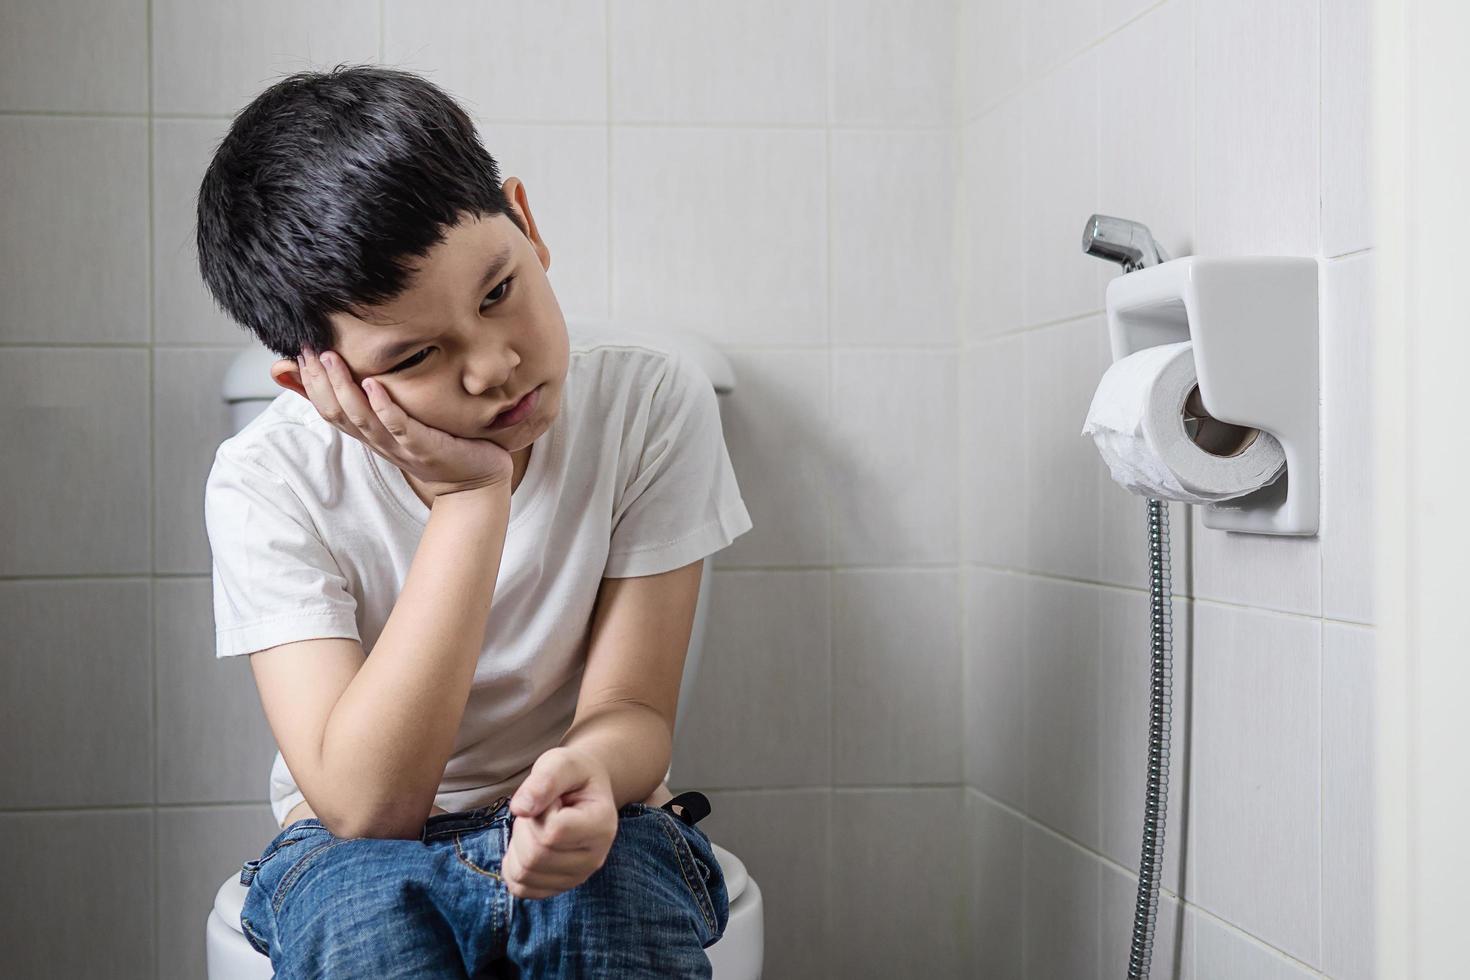 asiatischer junge, der auf toilettenschüssel sitzt und seidenpapier hält - gesundheitsproblemkonzept foto